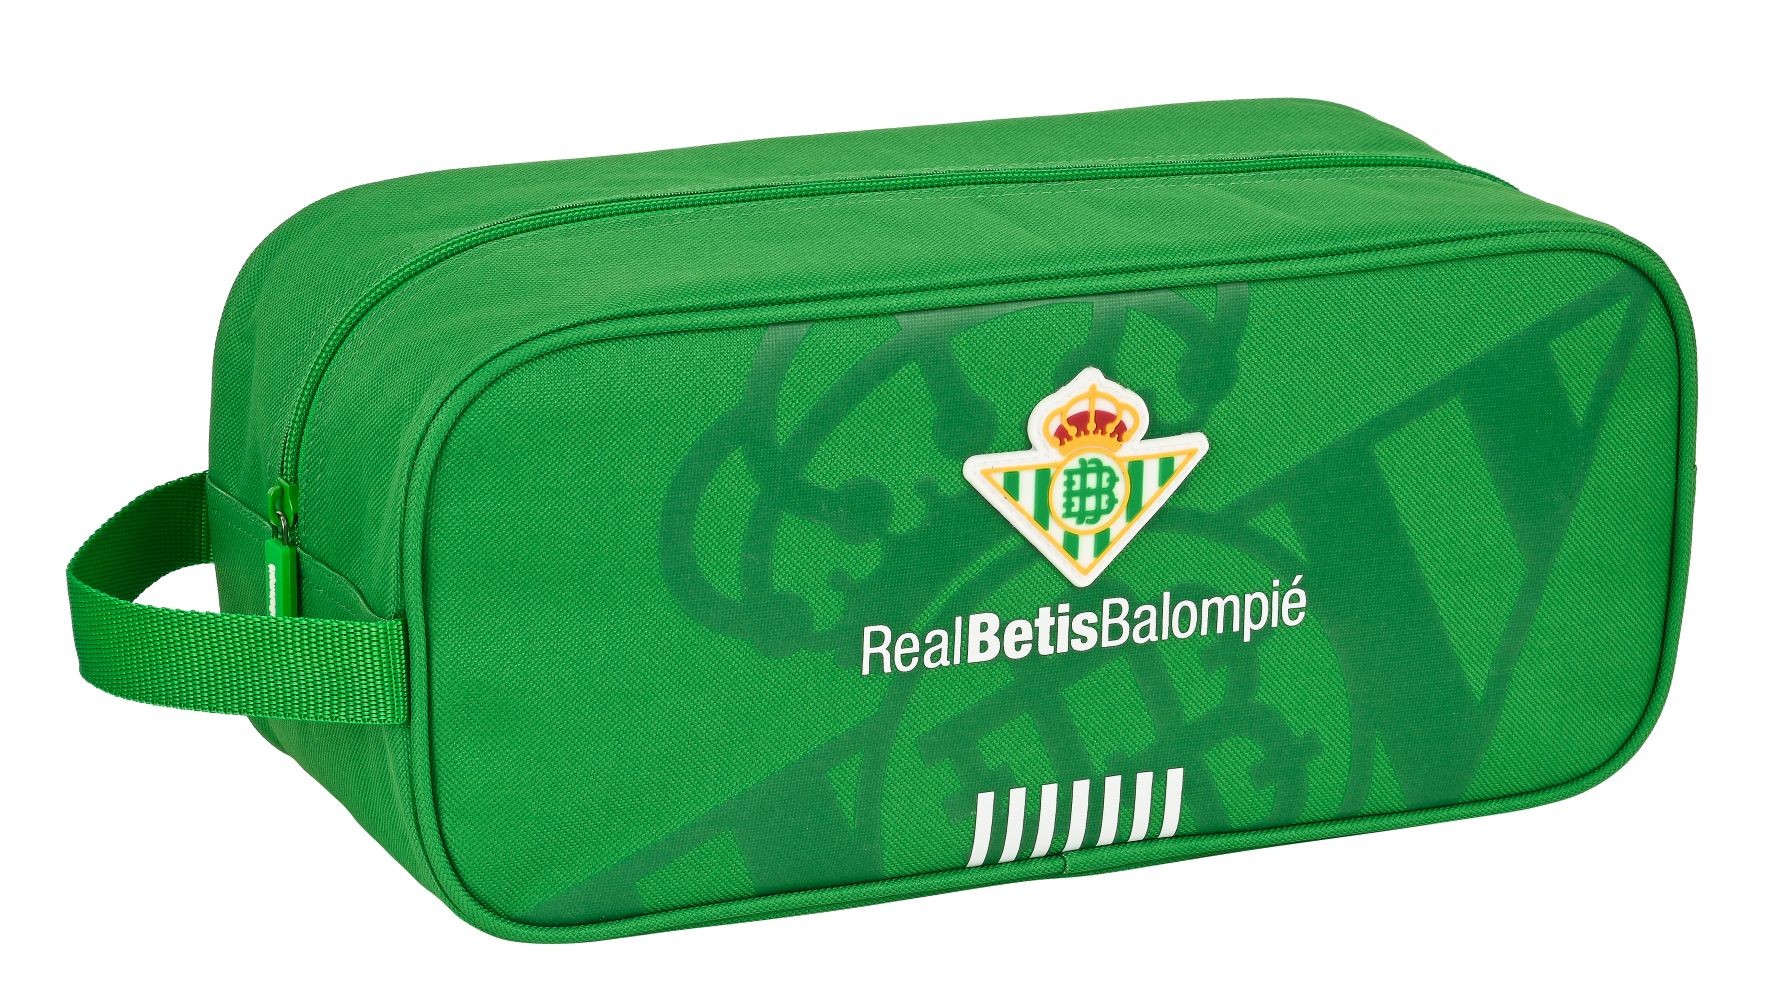 Sandwichera del Real Betis Balompie * Regalos de equipos de futbol  futbollife